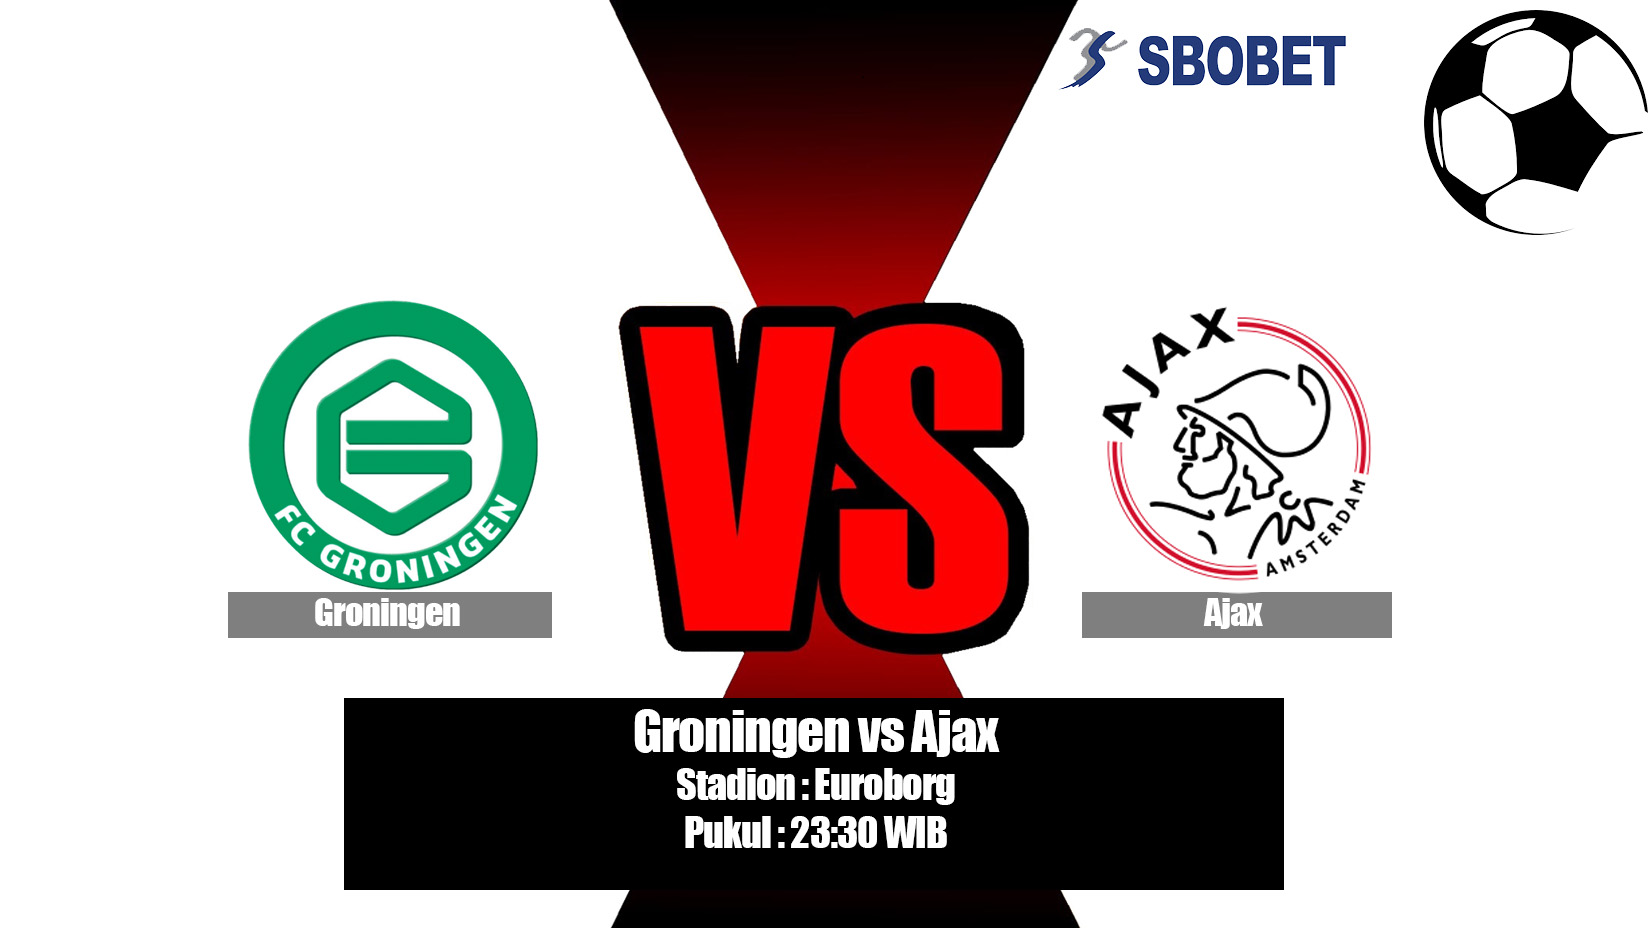 Prediksi Bola Groningen vs Ajax 20 April 2019